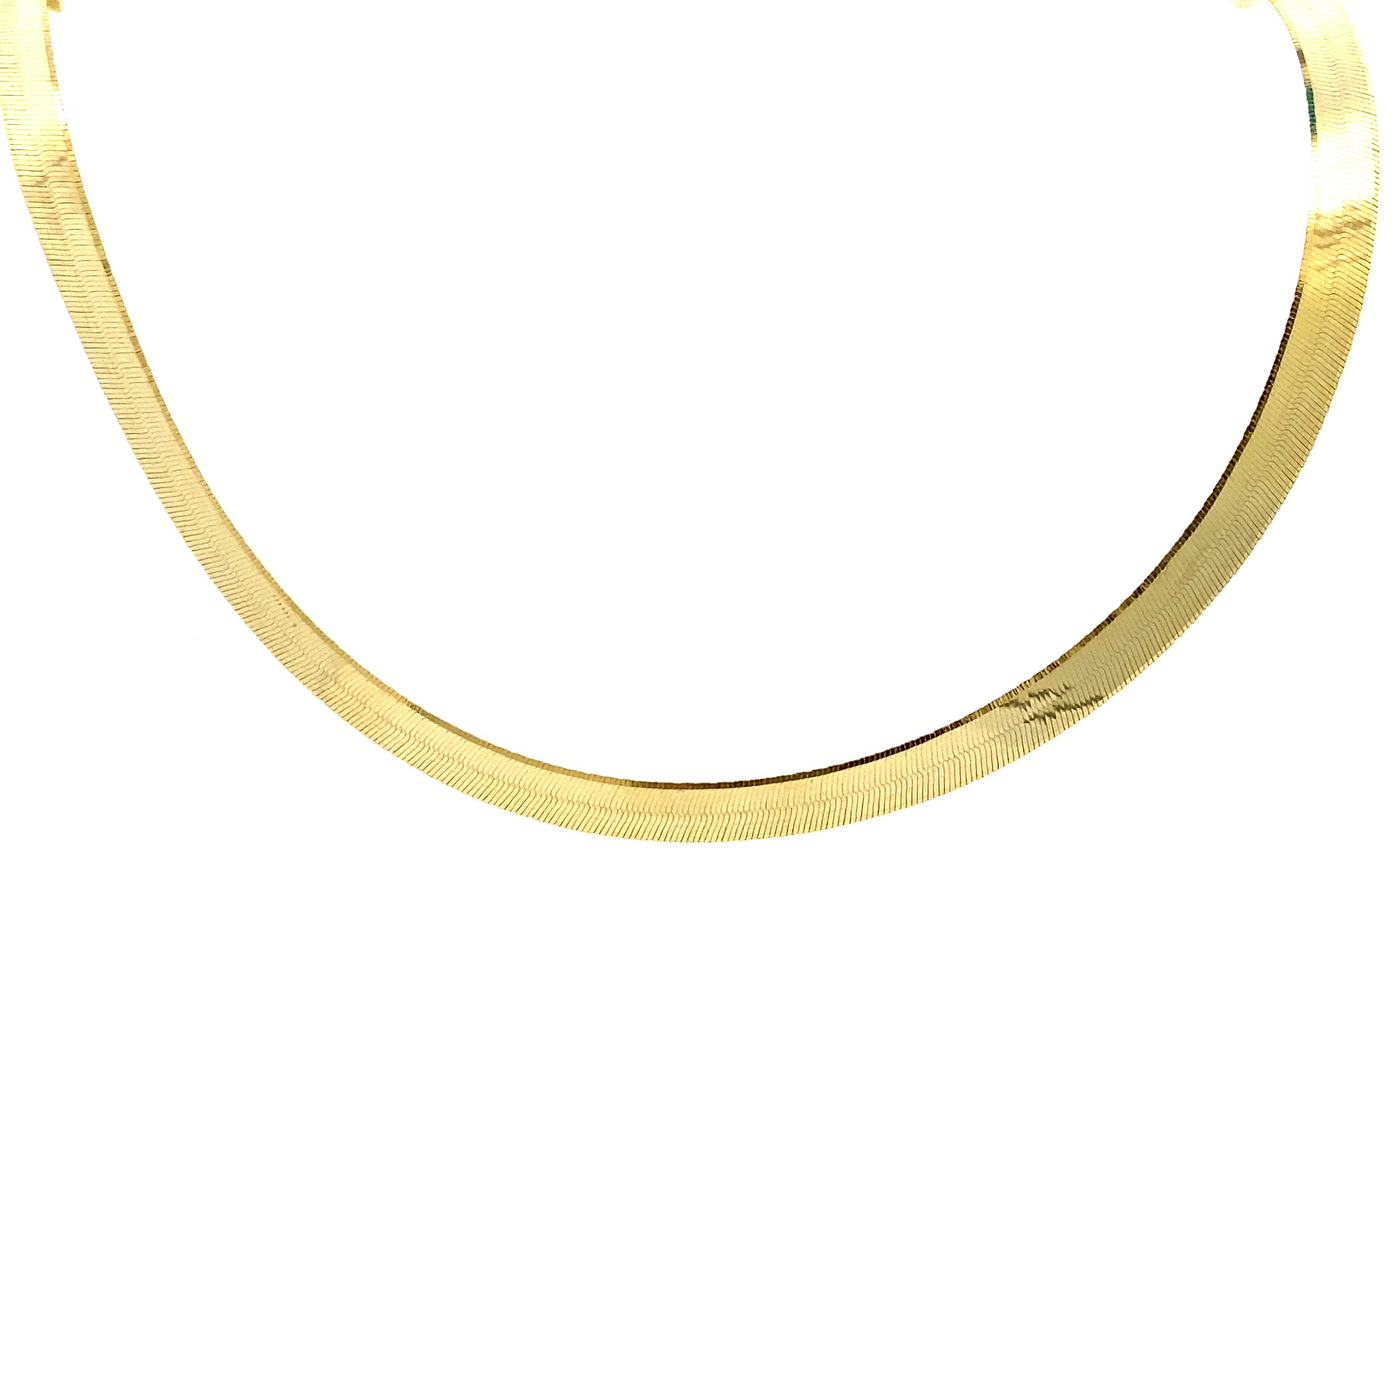 10 Karat Yellow Gold 3.5mm Herringbone Chain